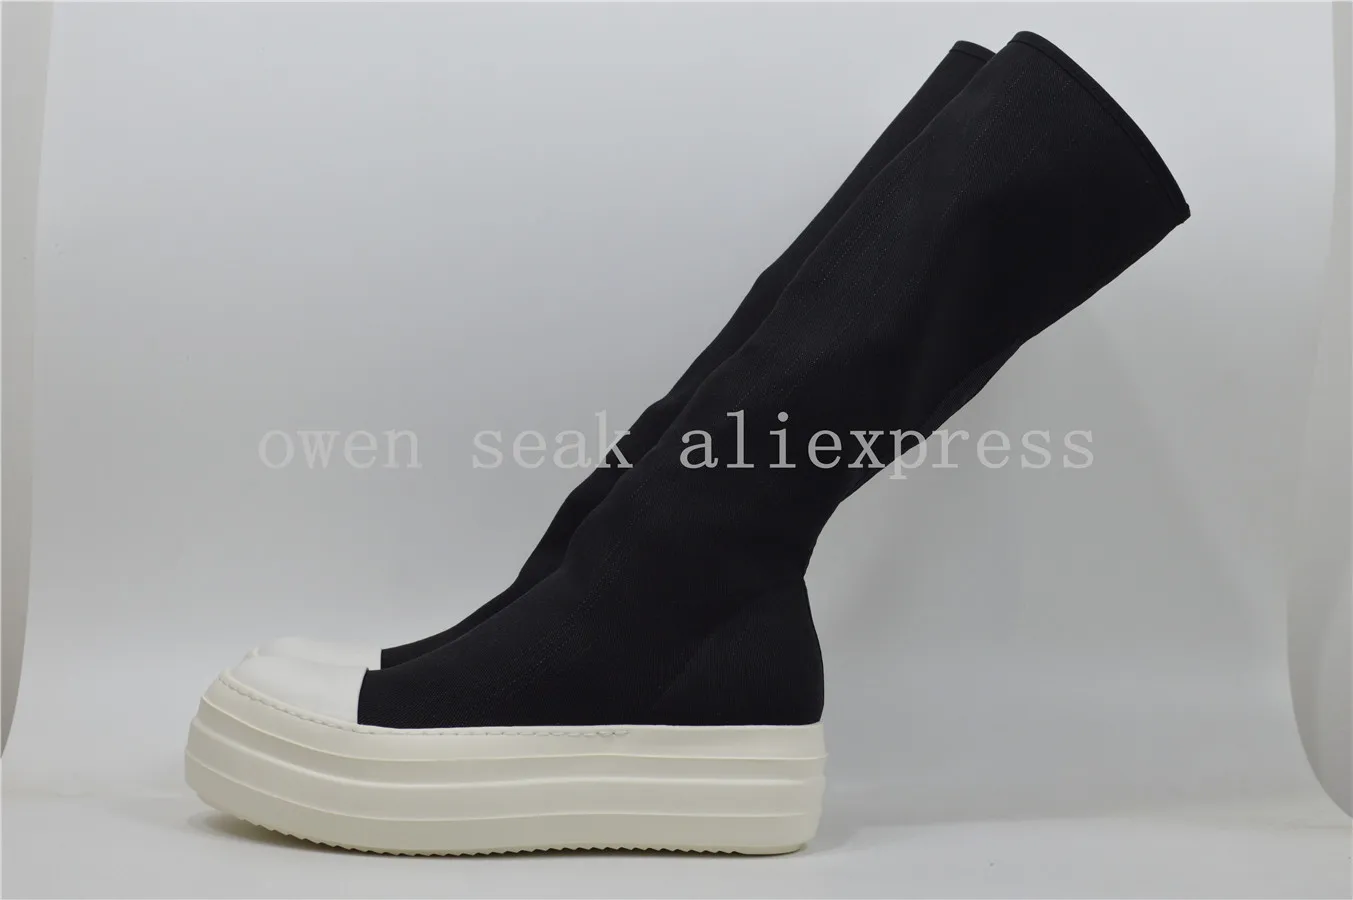 Obrázok /content/Owen-seak-mužov-kolená-vysoké-topánky-luxusné-2-260588.jpeg